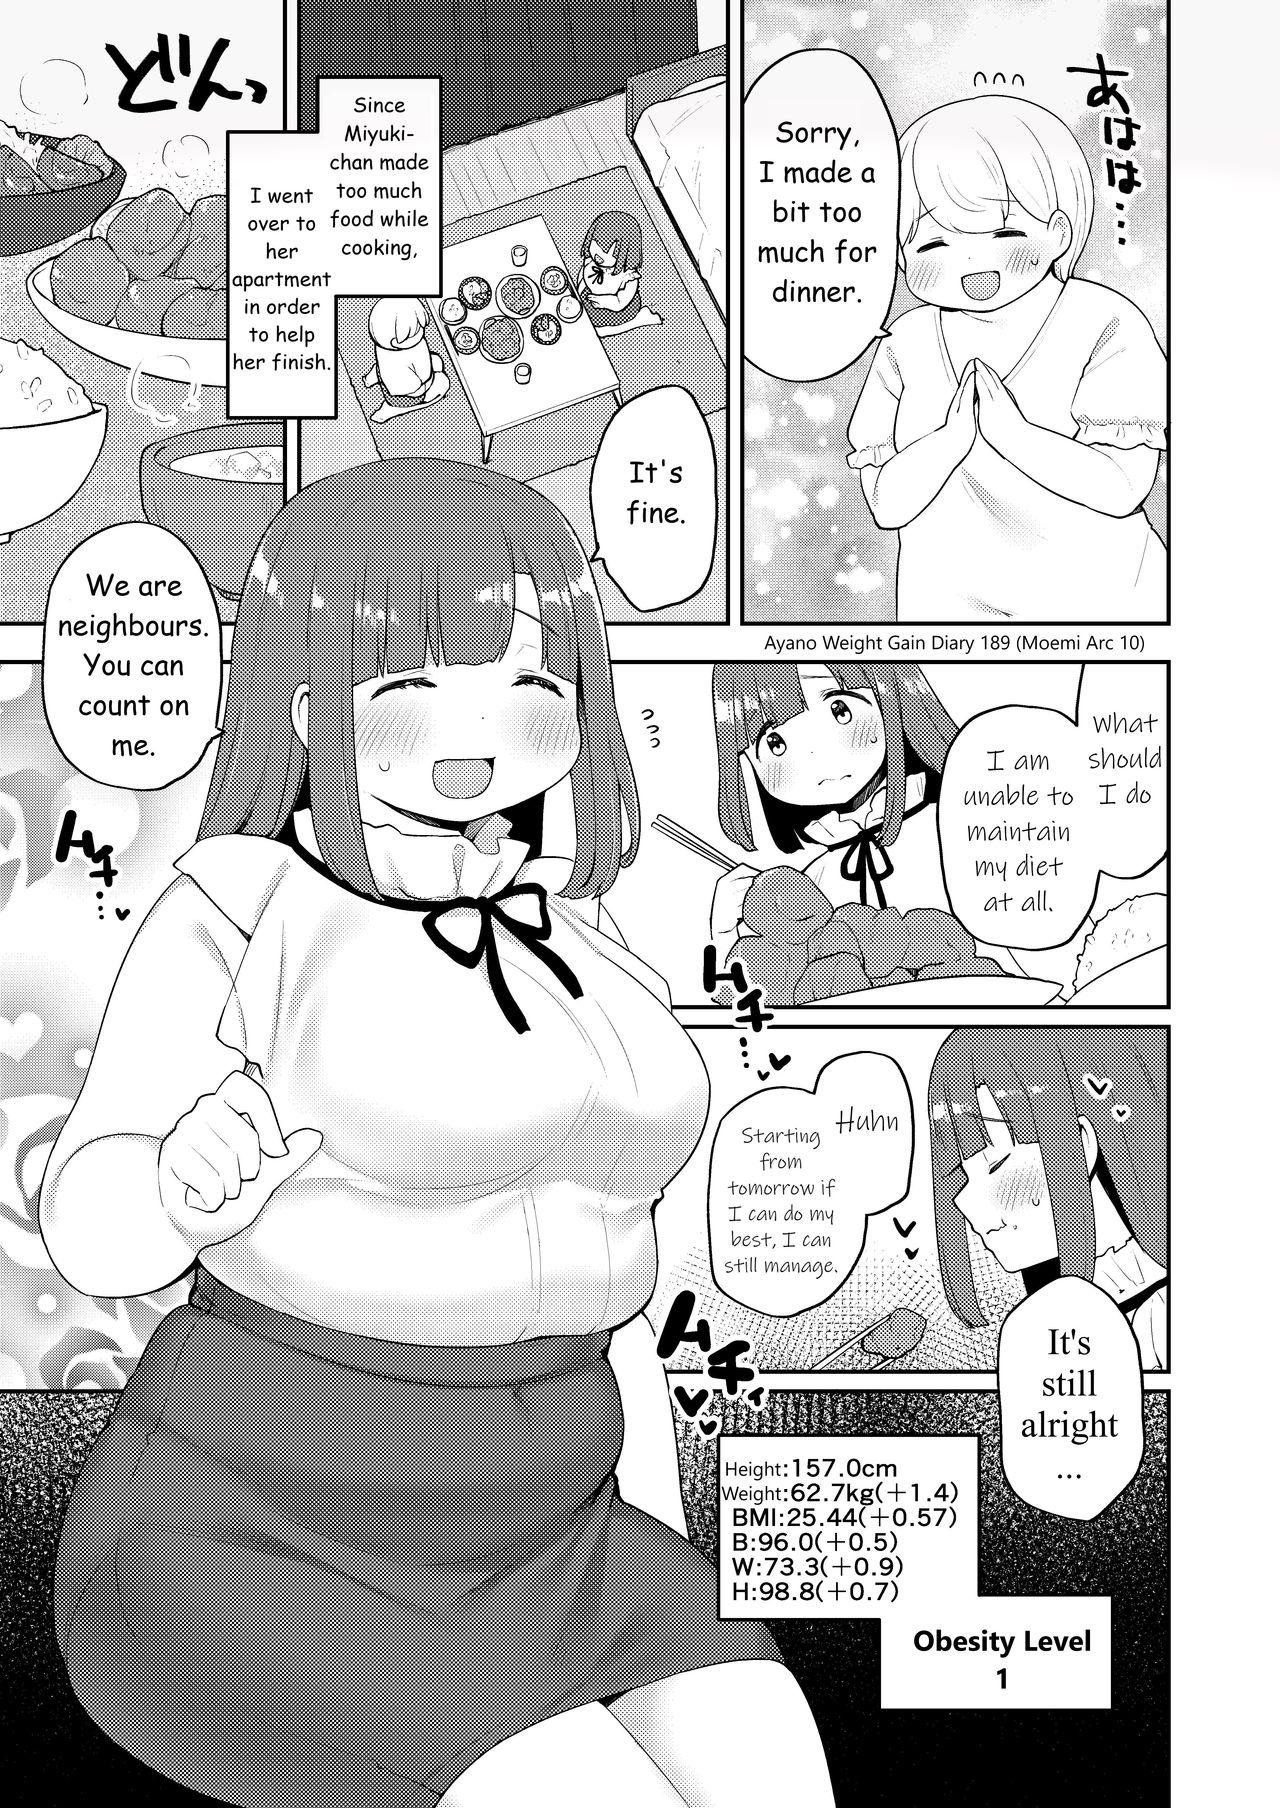 Buttfucking Ayano's Weight Gain Diary Cruising - Page 189